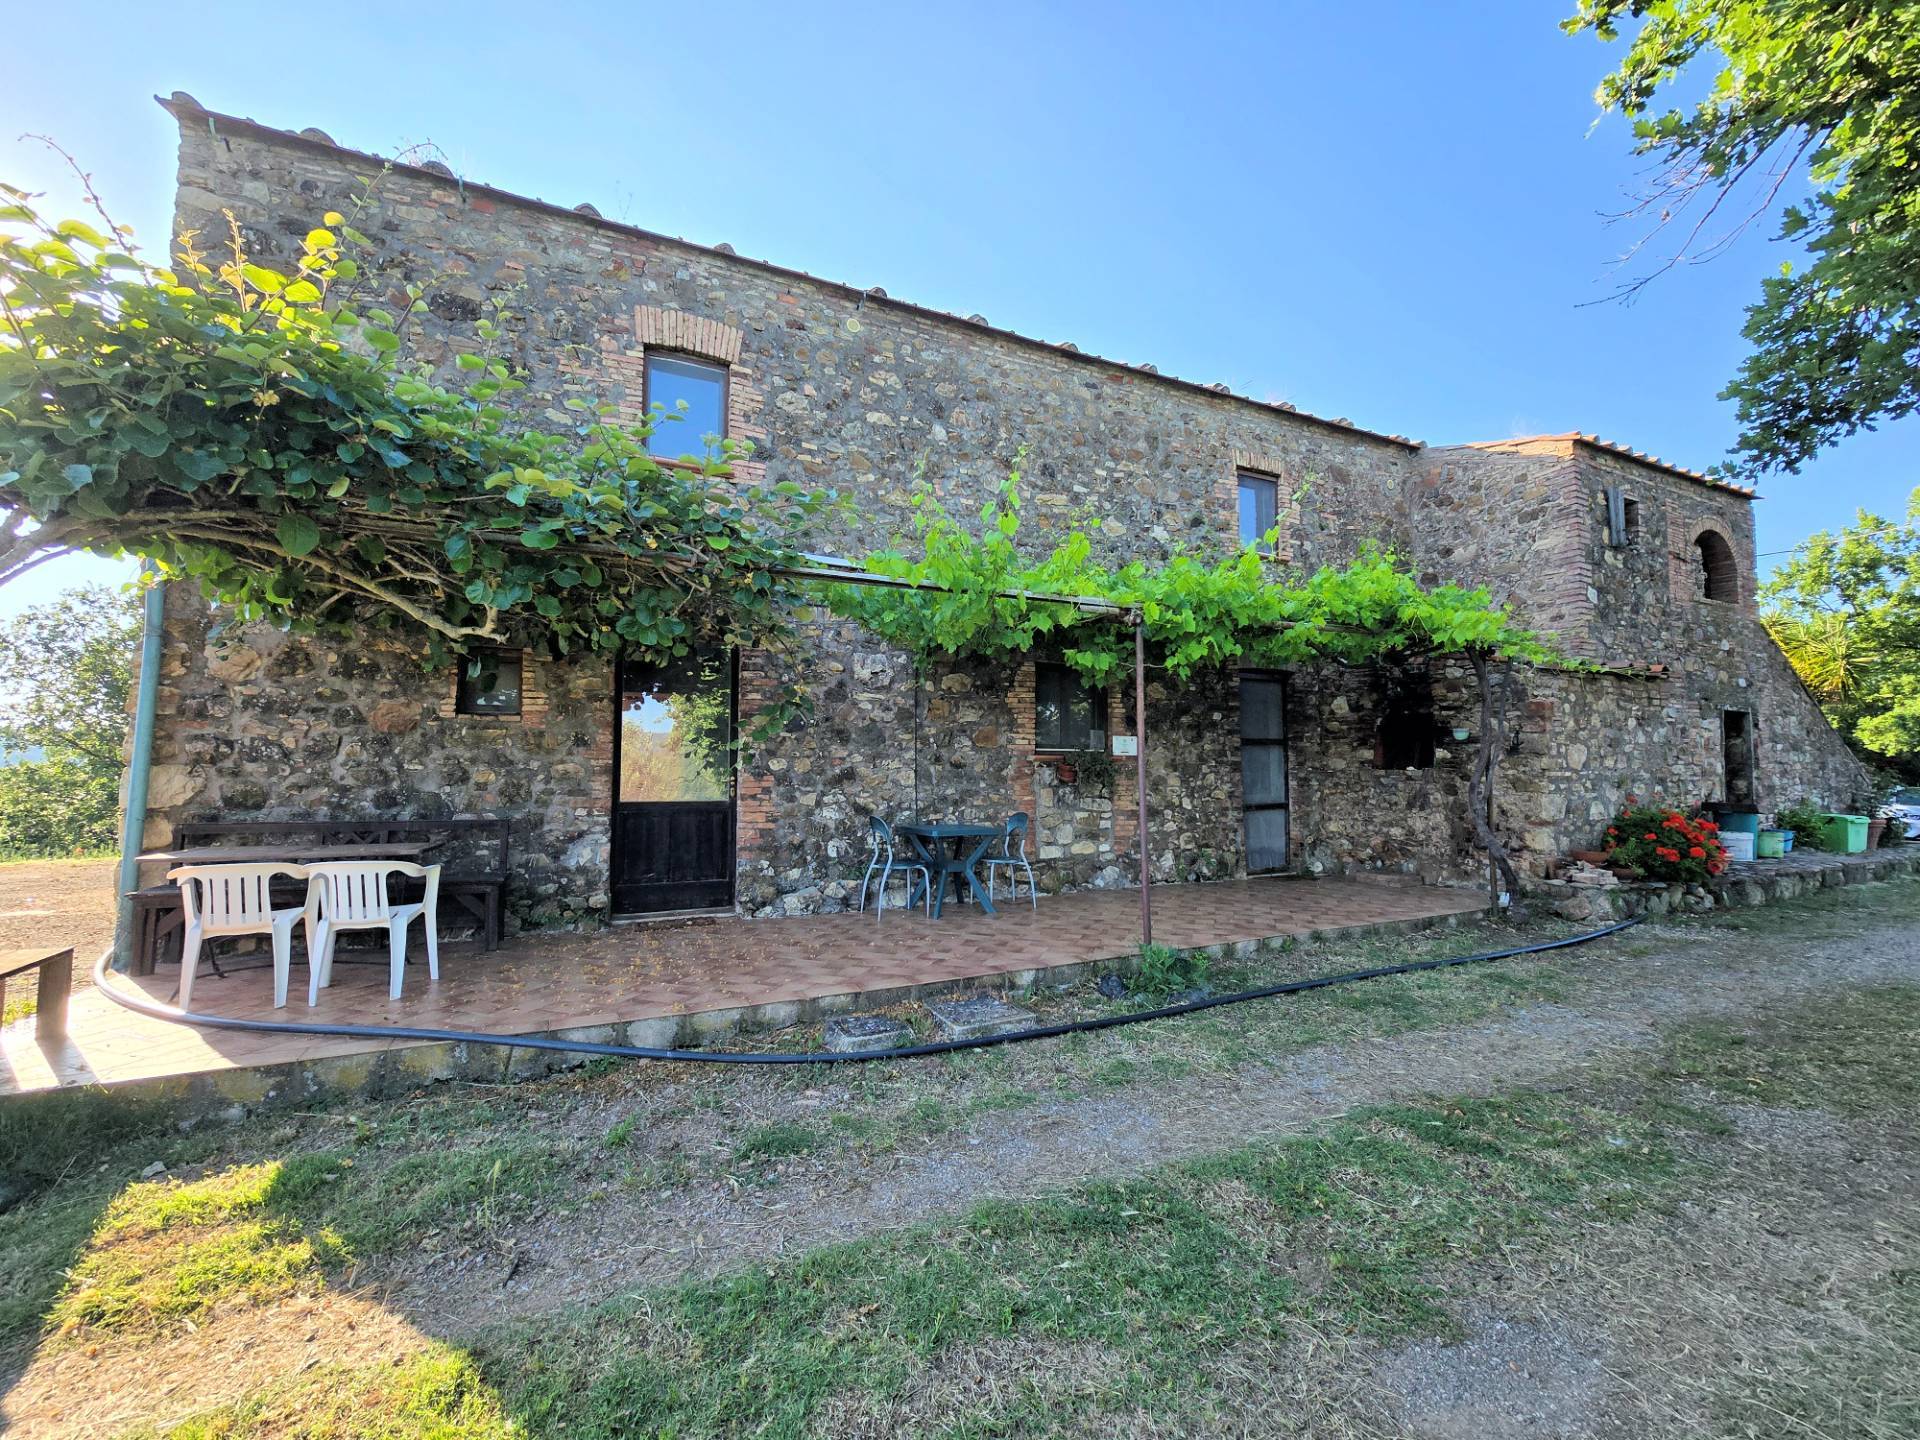 1524-Casale in stile rustico Toscano in posizione panoramica con annesso e 54 ettari di terreno-Monterotondo Marittimo-1 Agenzia Immobiliare ASIP